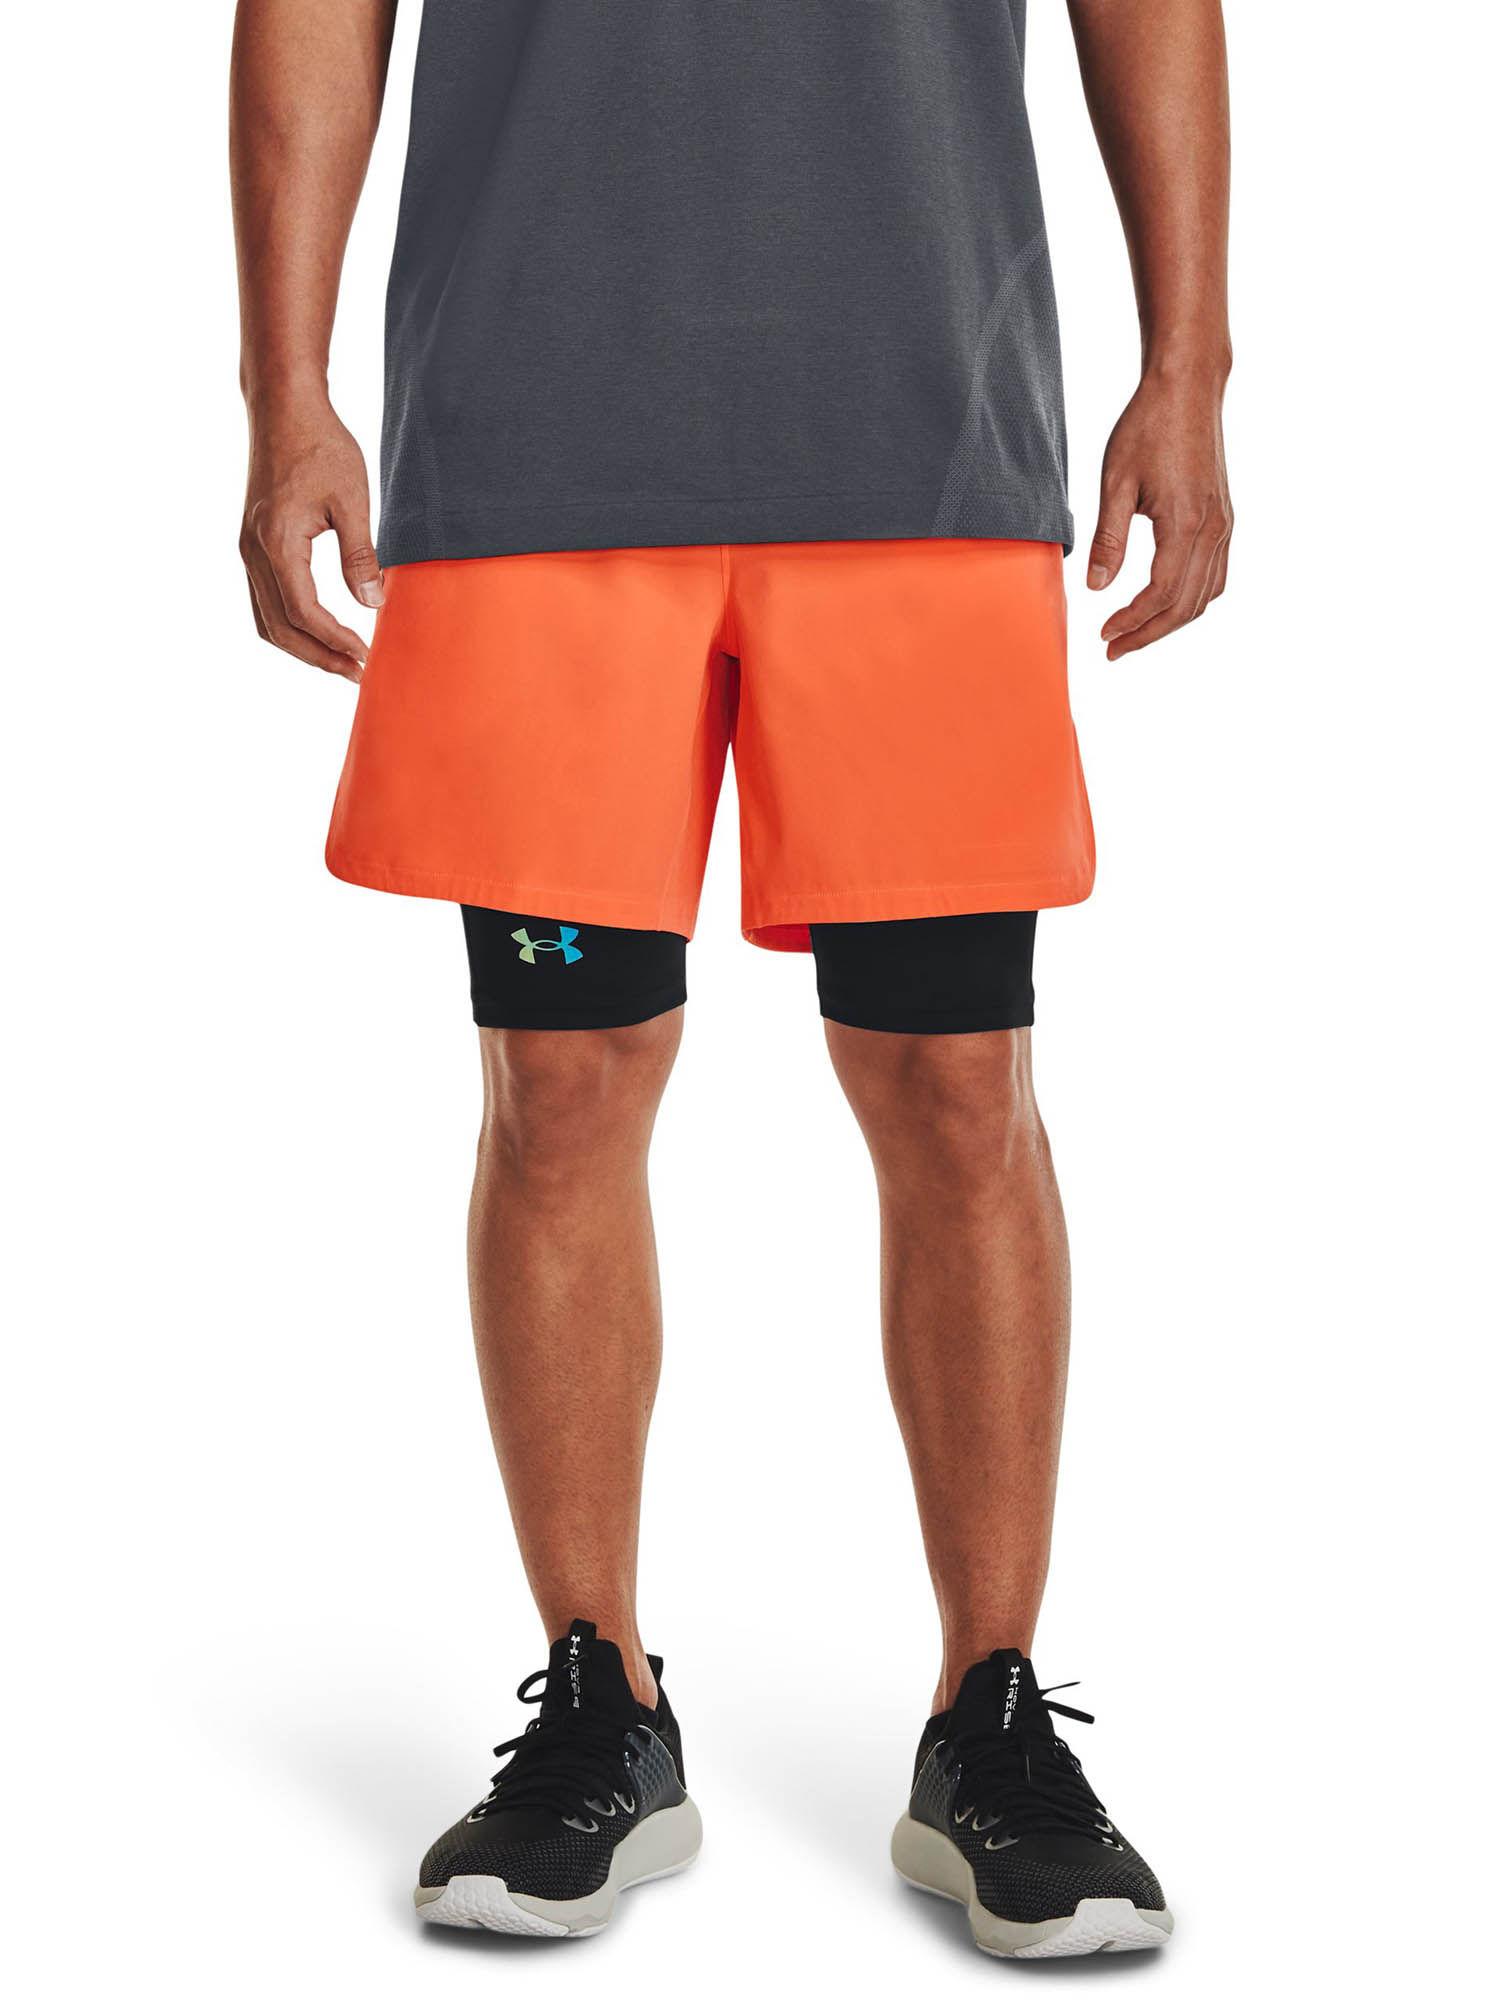 peak woven shorts-orange